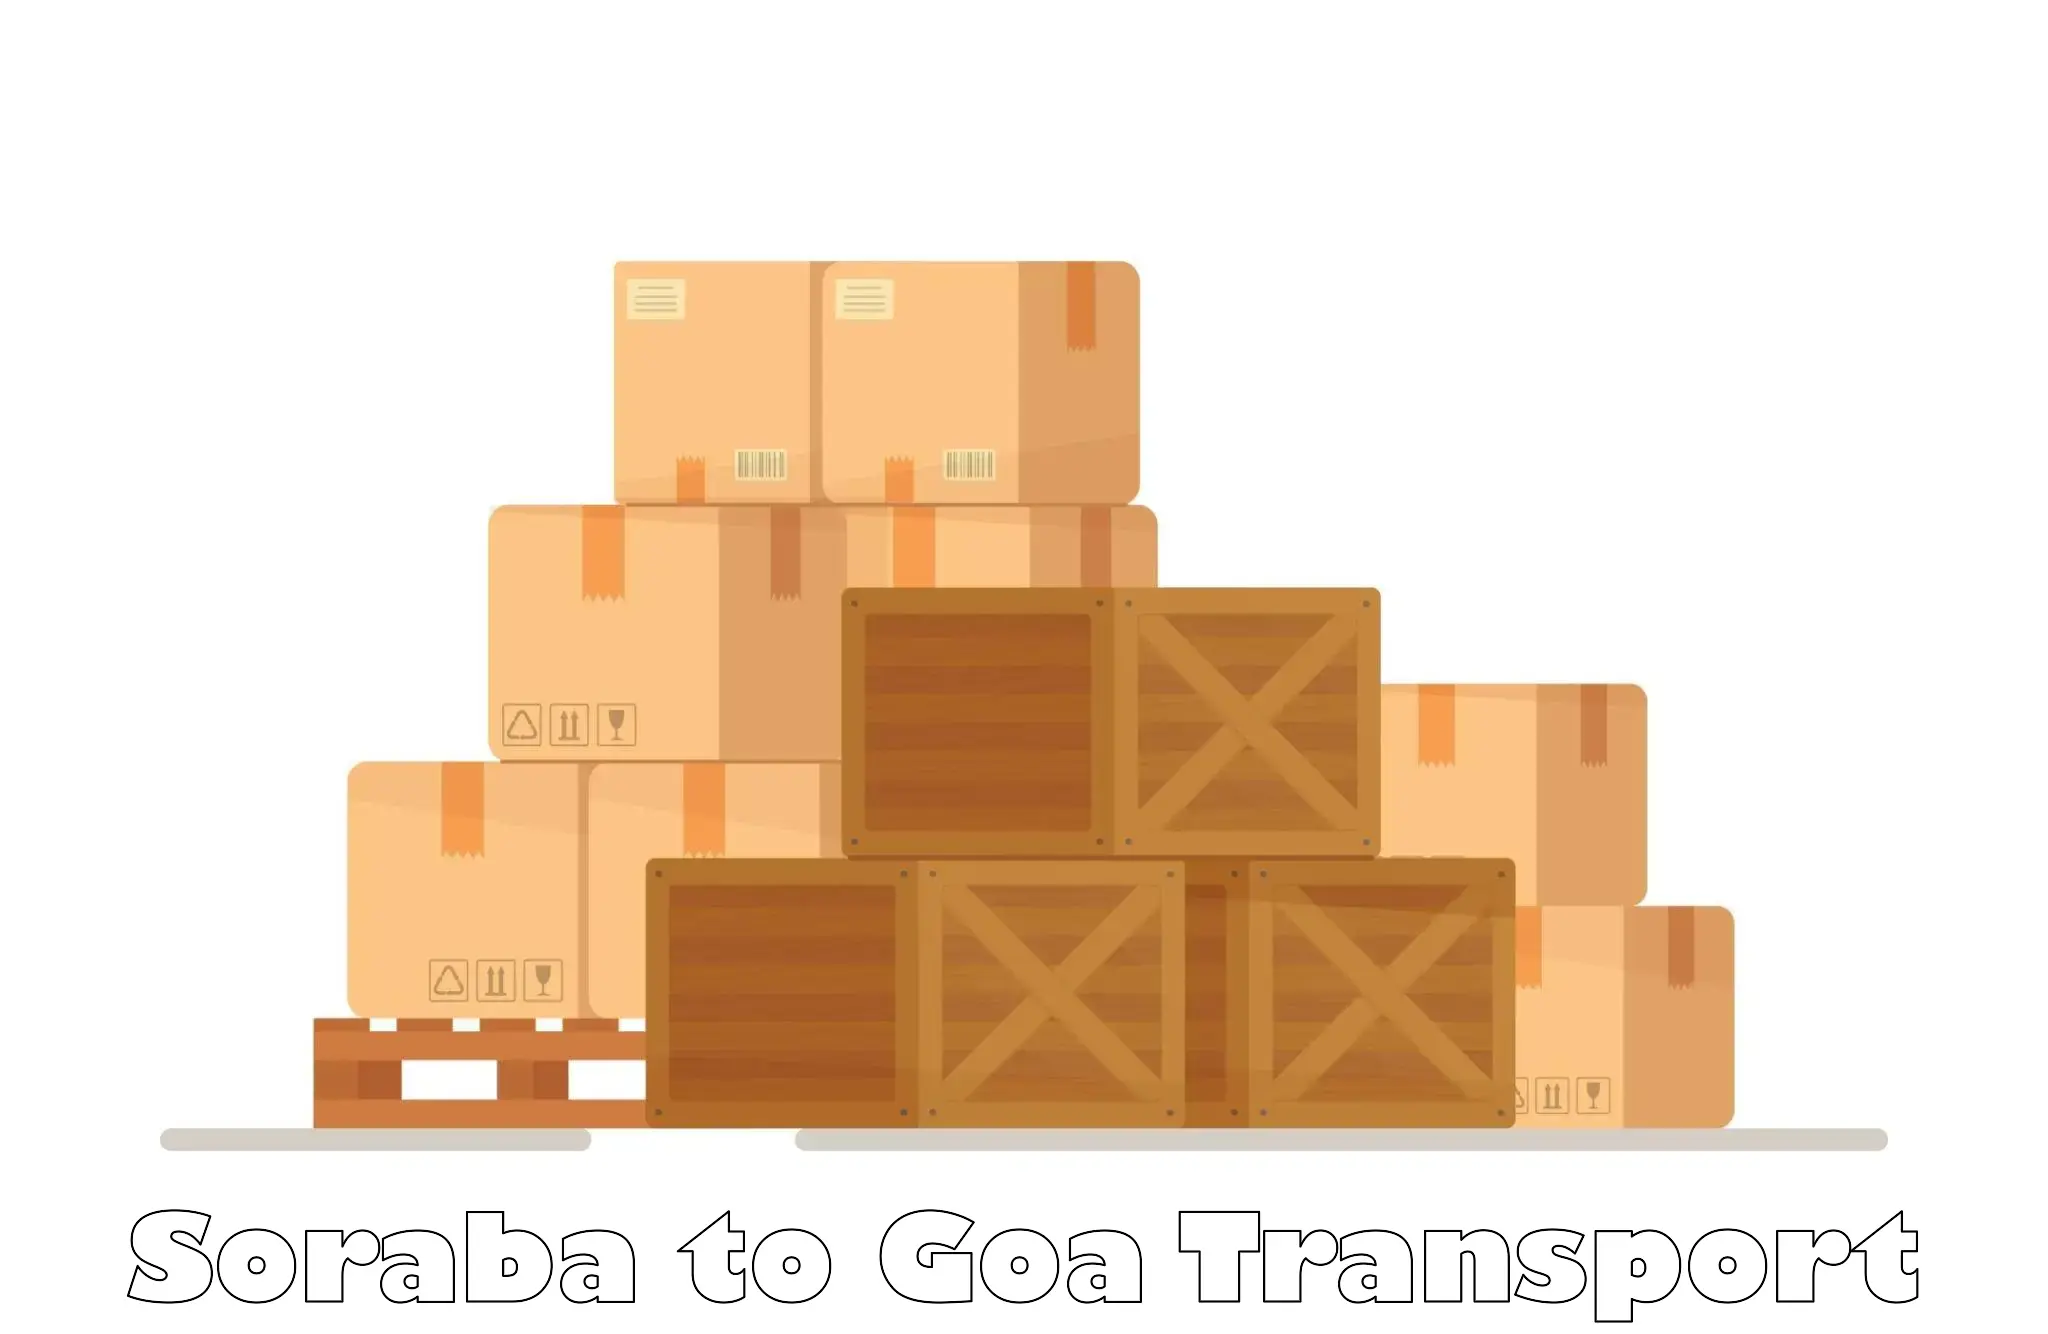 Intercity goods transport in Soraba to Ponda